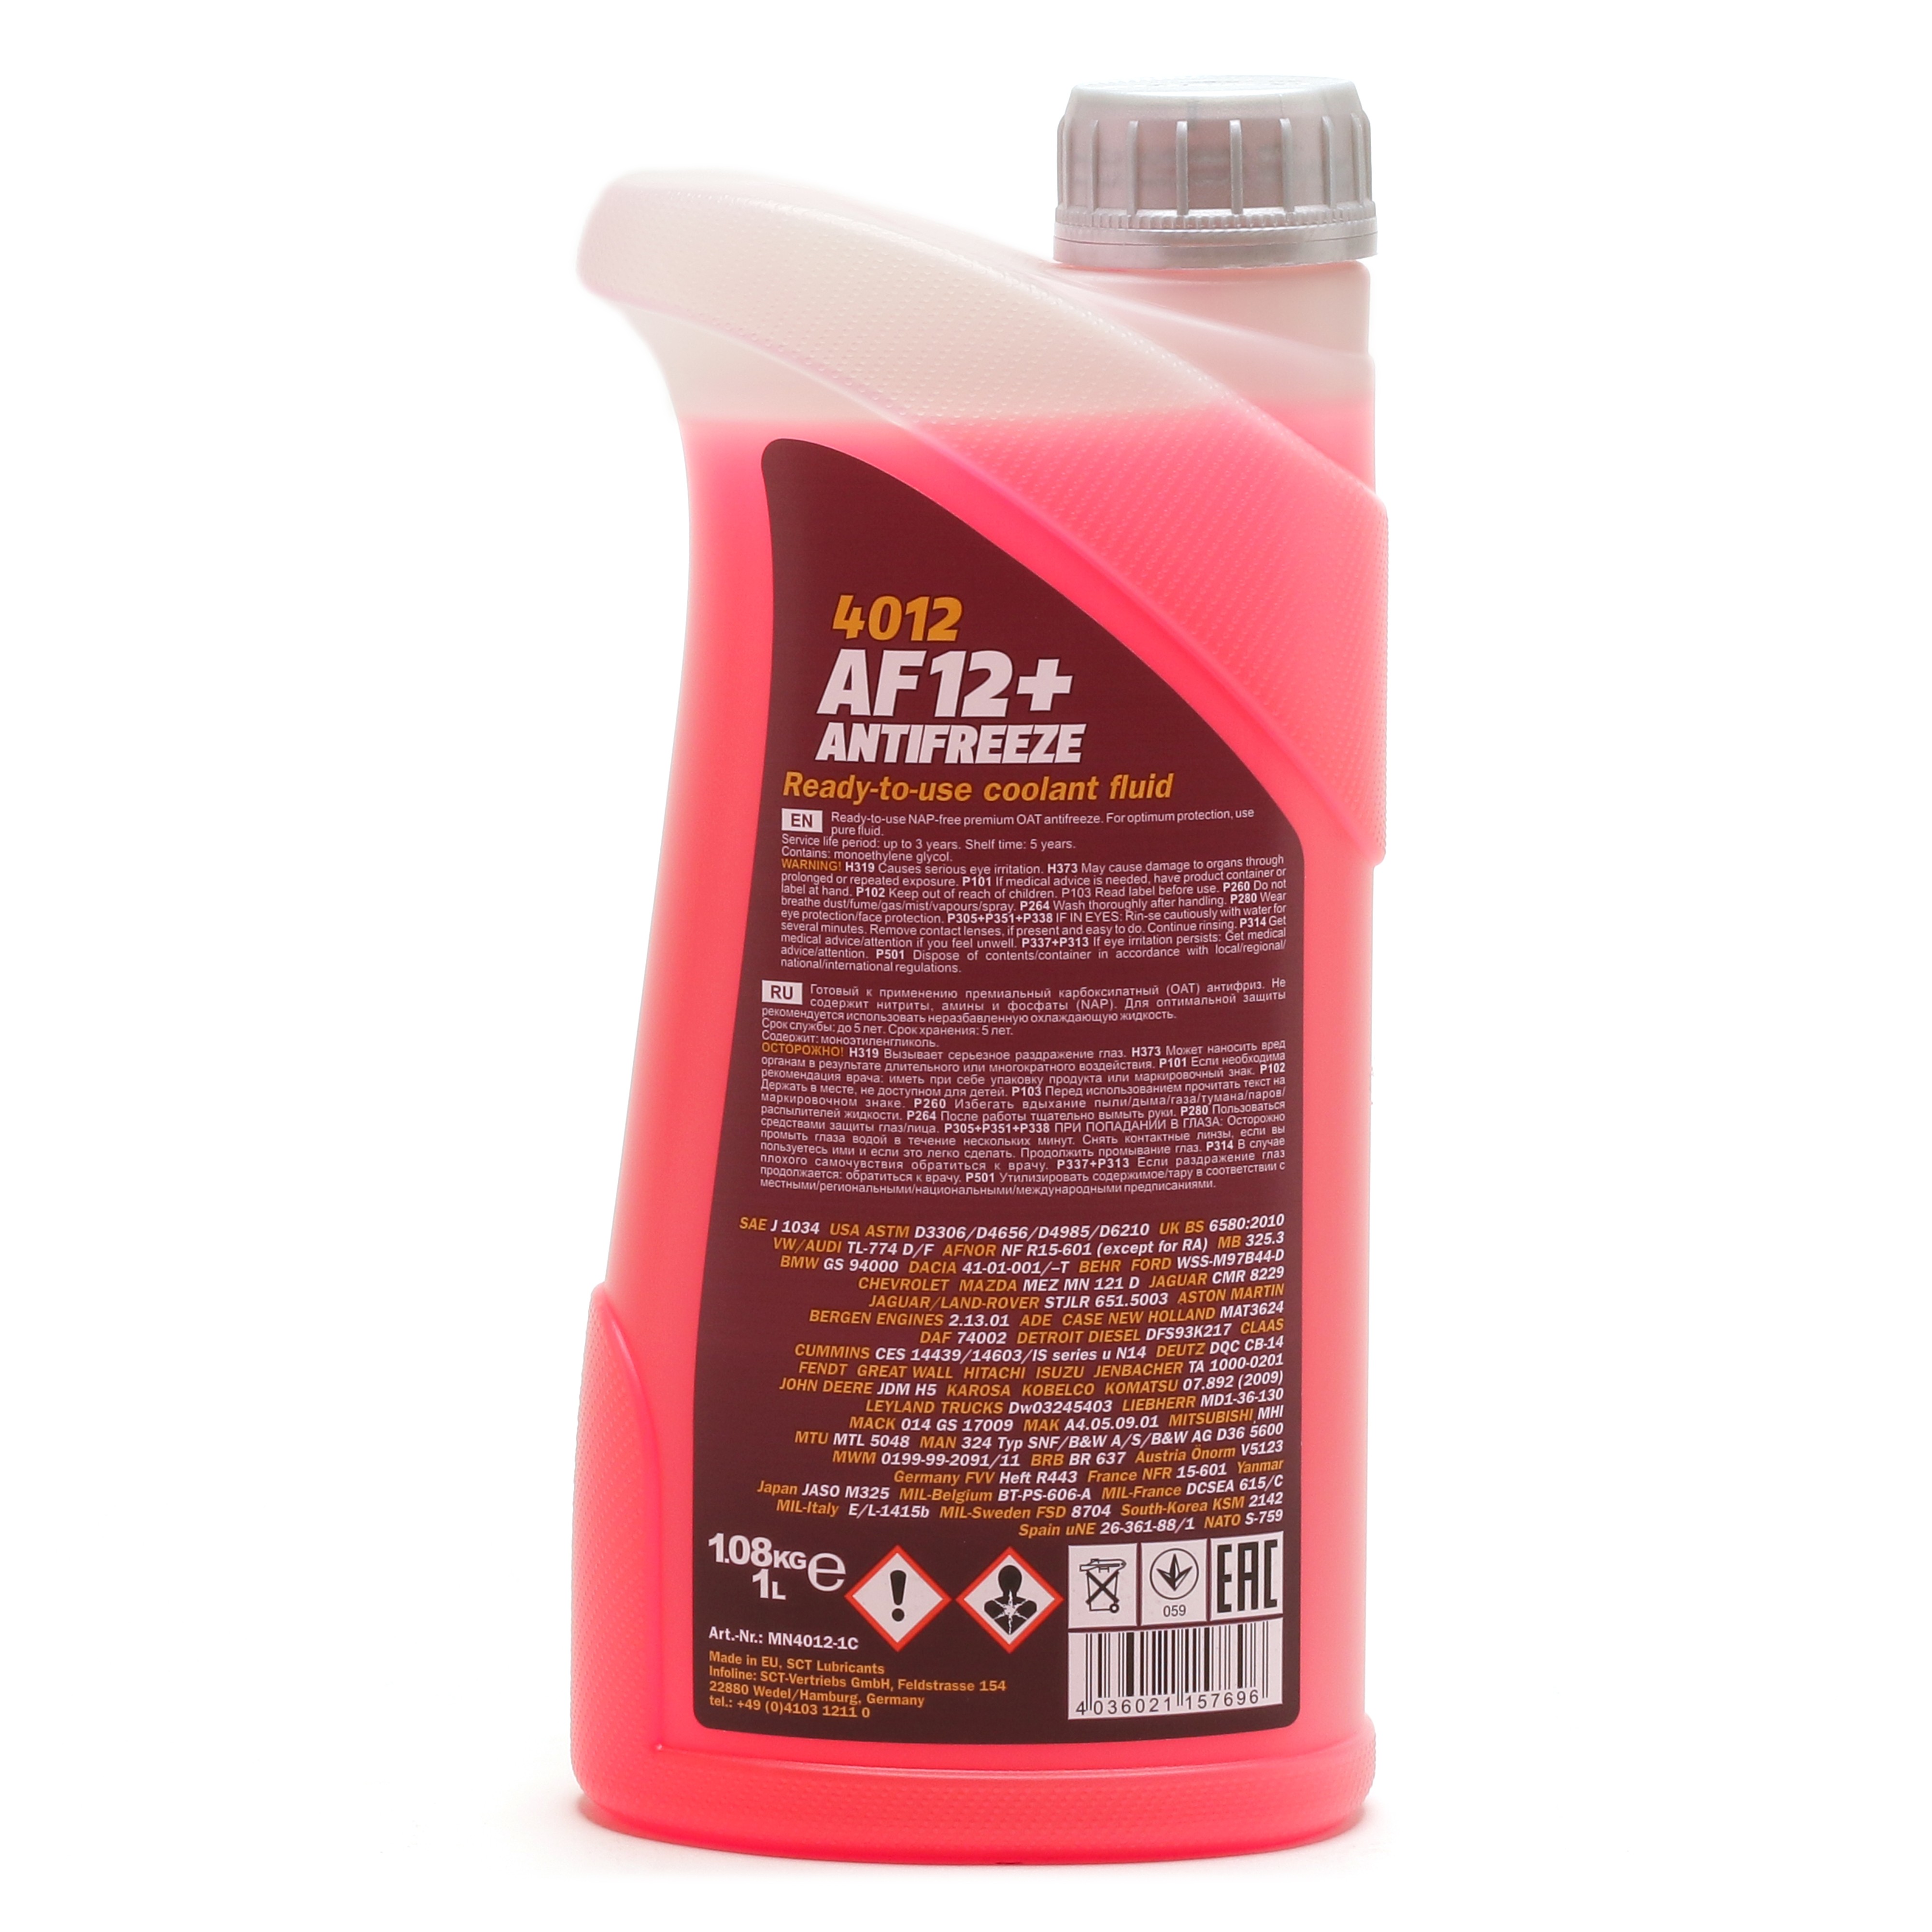 Mannol 4012 Kühlerfrostschutz Antifreeze AF12+ Longlife -40 Fertigmischung 1 Liter